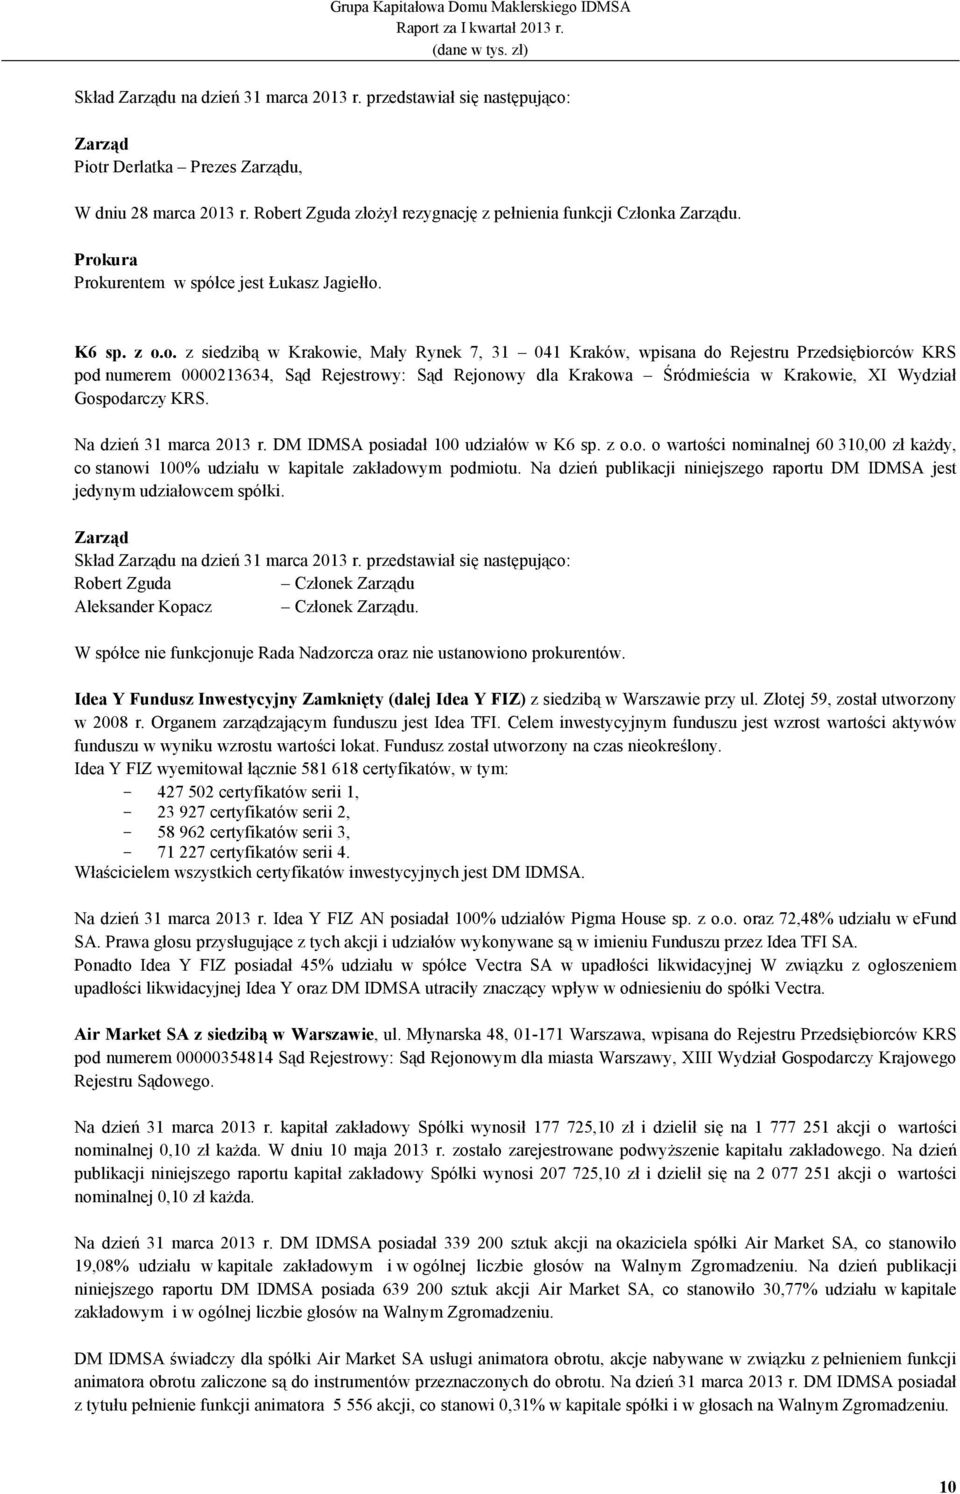 Sąd Rejonowy dla Krakowa Śródmieścia w Krakowie, XI Wydział Gospodarczy KRS. Na dzień 31 marca 2013 r. DM IDMSA posiadał 100 udziałów w K6 sp. z o.o. o wartości nominalnej 60 310,00 zł kaŝdy, co stanowi 100% udziału w kapitale zakładowym podmiotu.